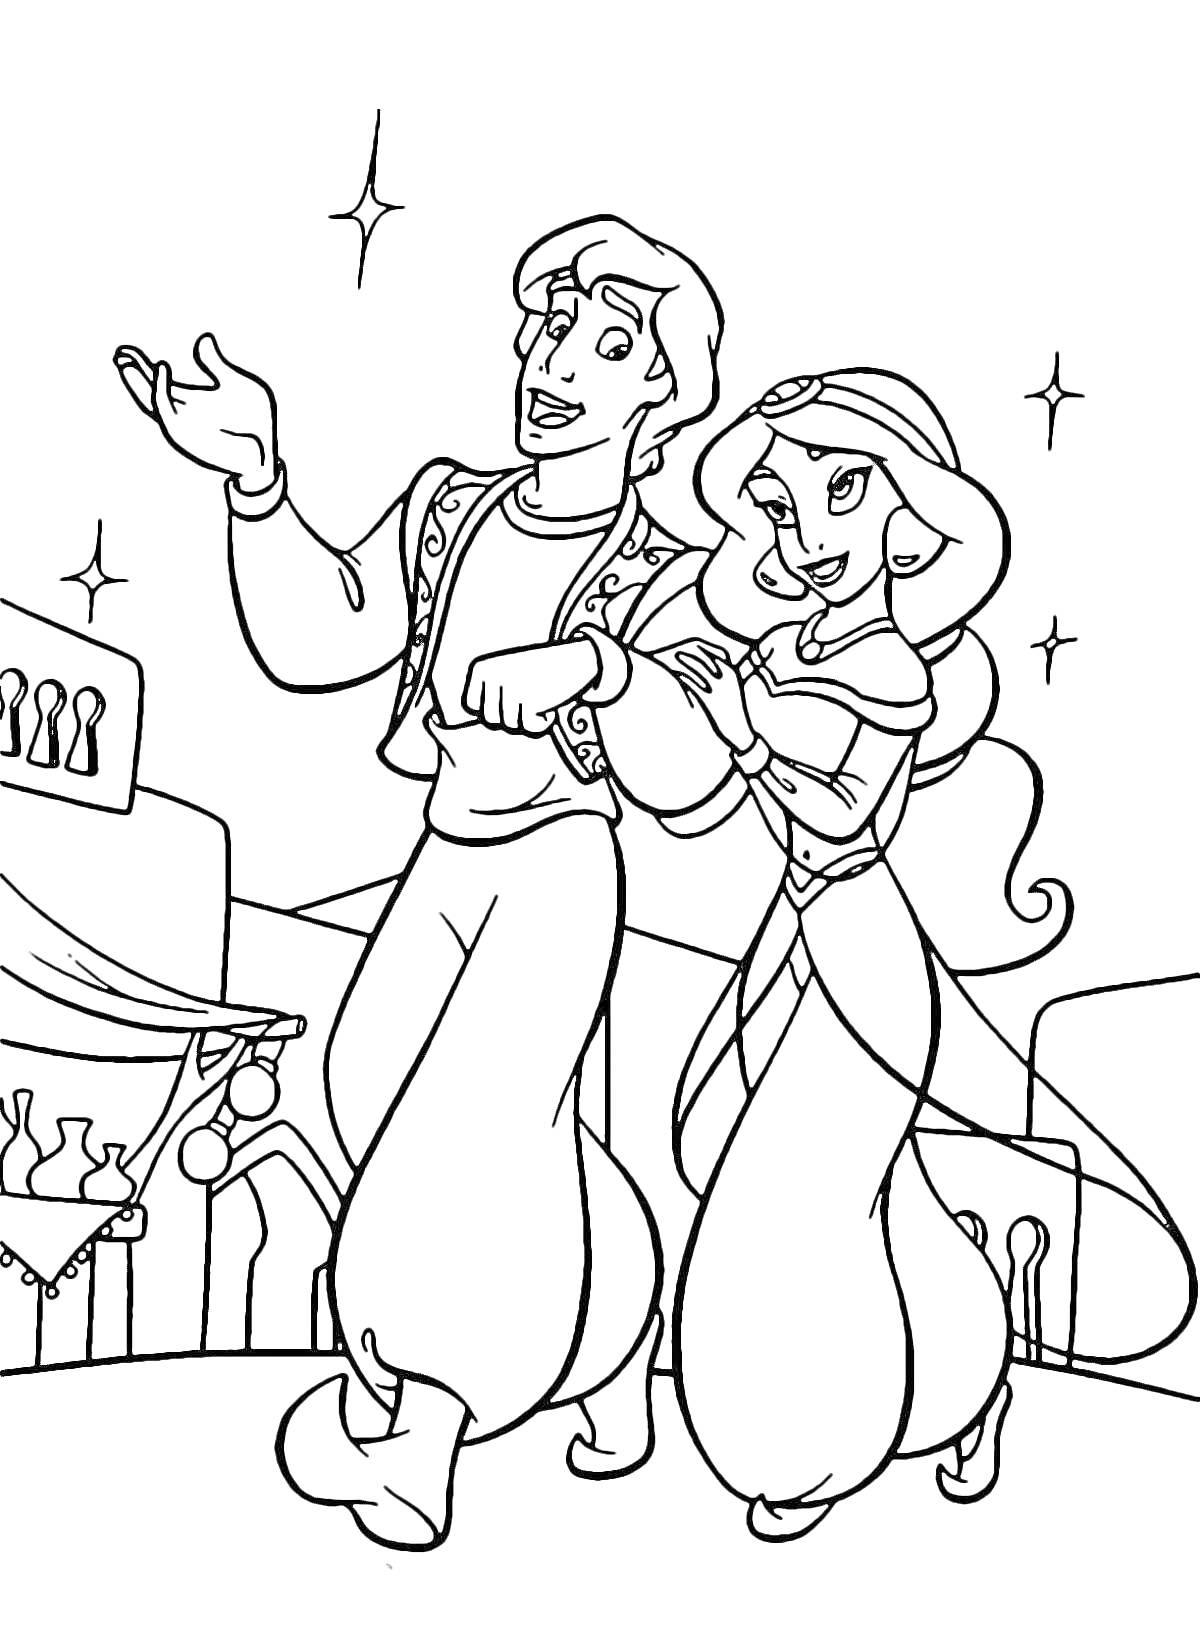 Раскраска Алладин и Жасмин прогуливаются по городу с рынком на заднем плане и звёздами на небе